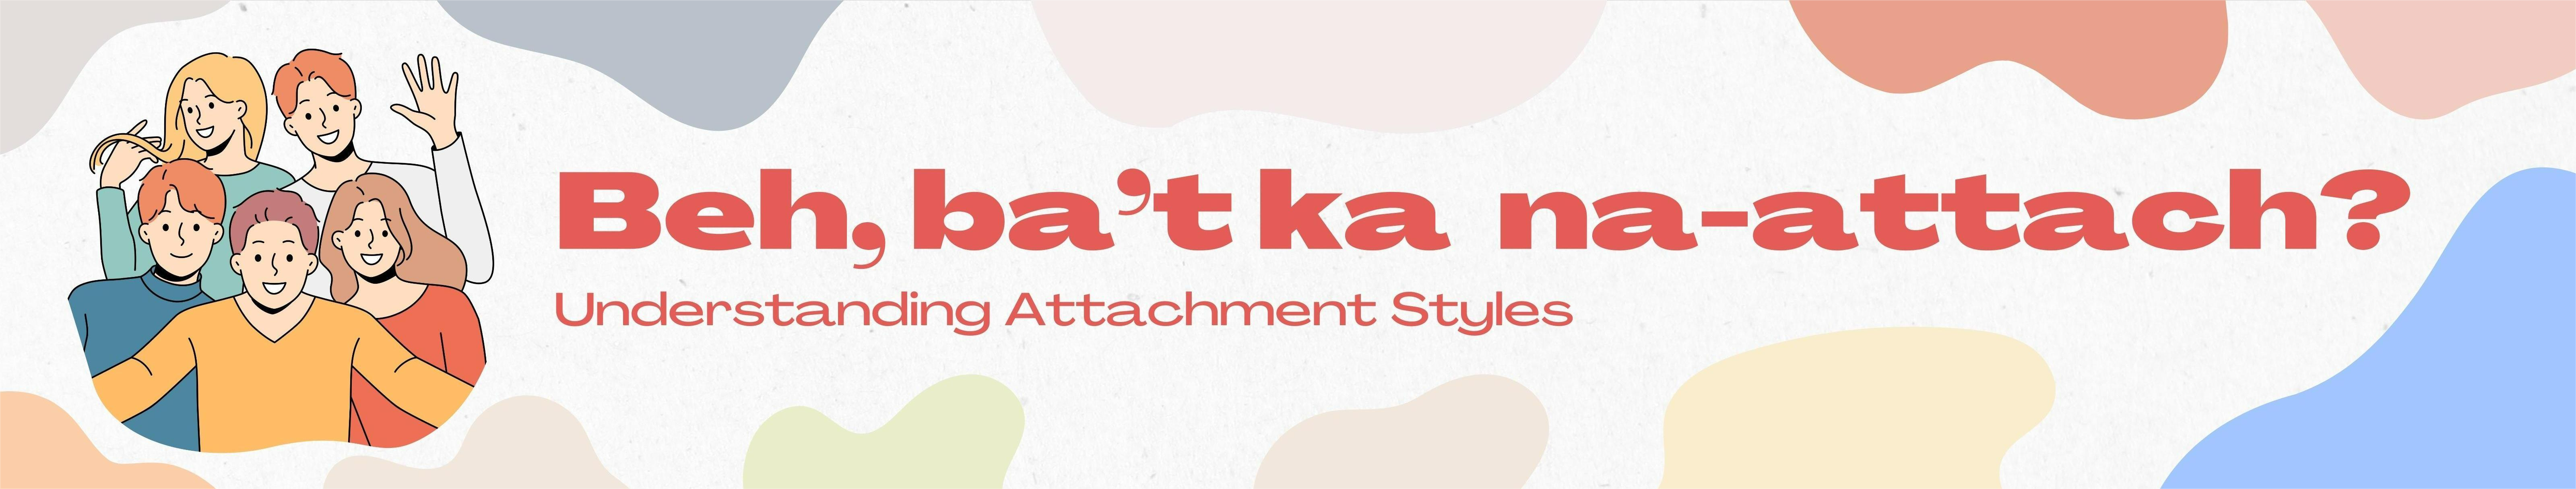 Beh, ba't ka na attach?: Understanding Attachment Styles